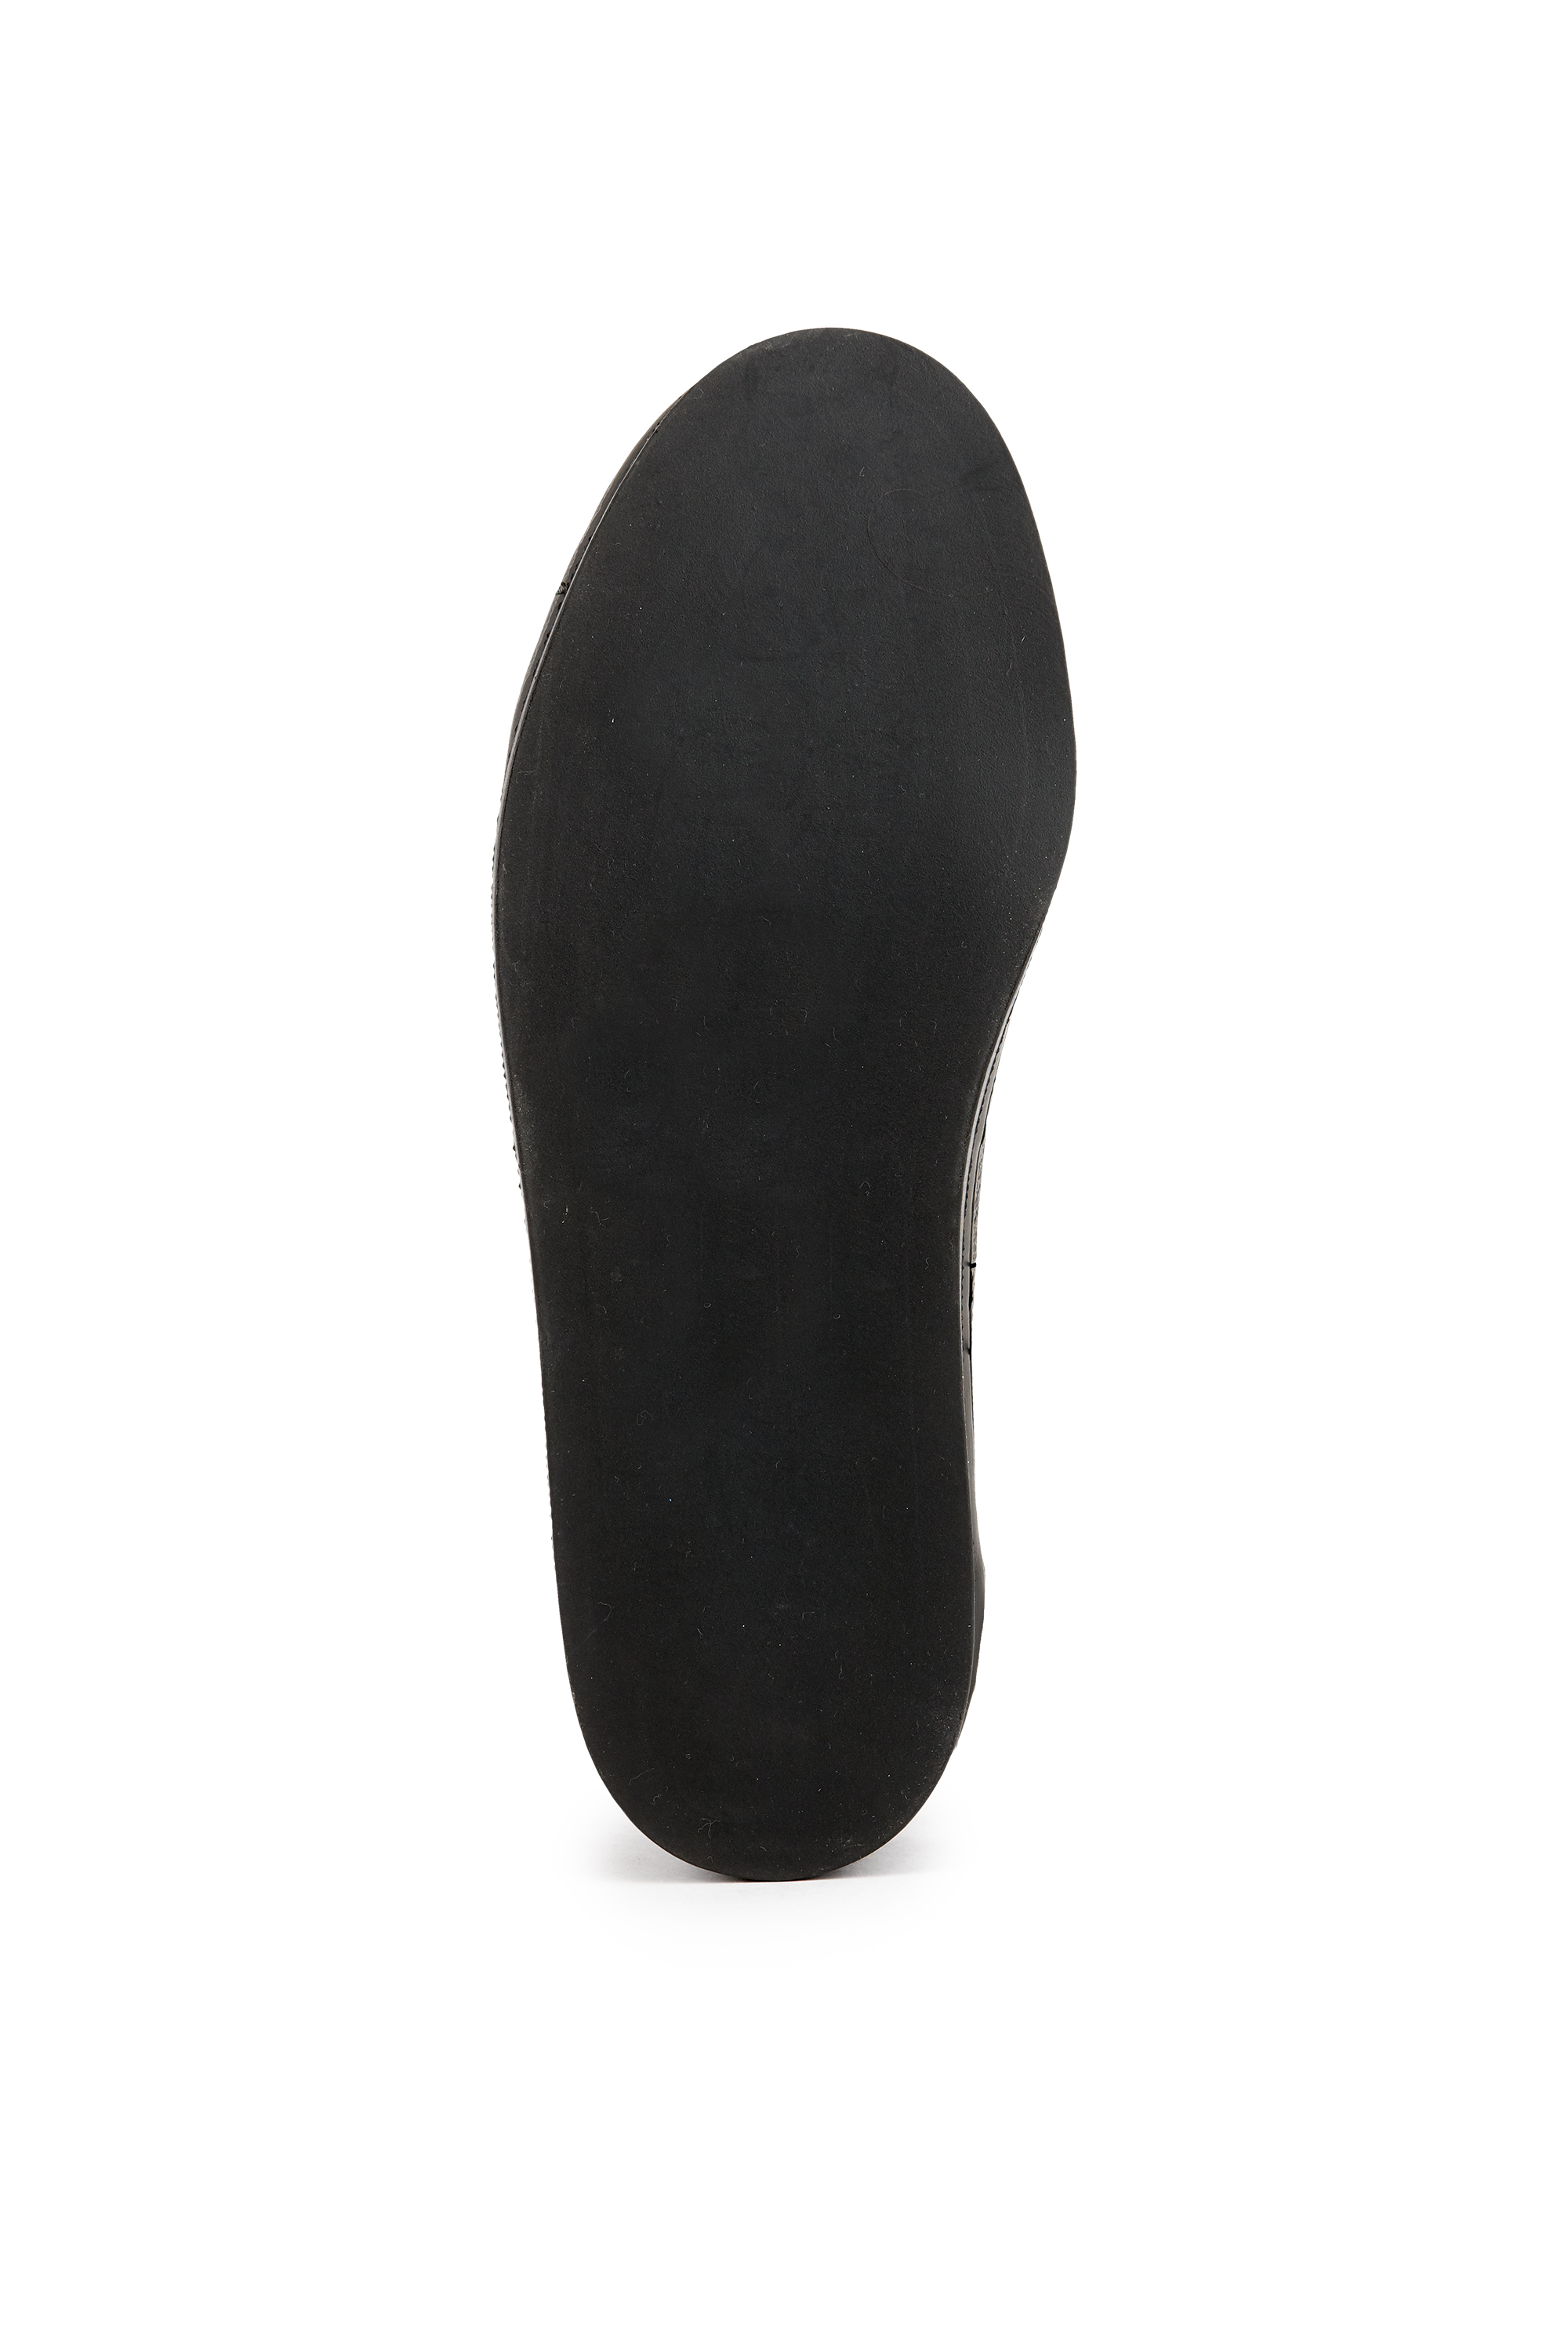 Ботинки 'Асфальтоукладчик', мужские черные